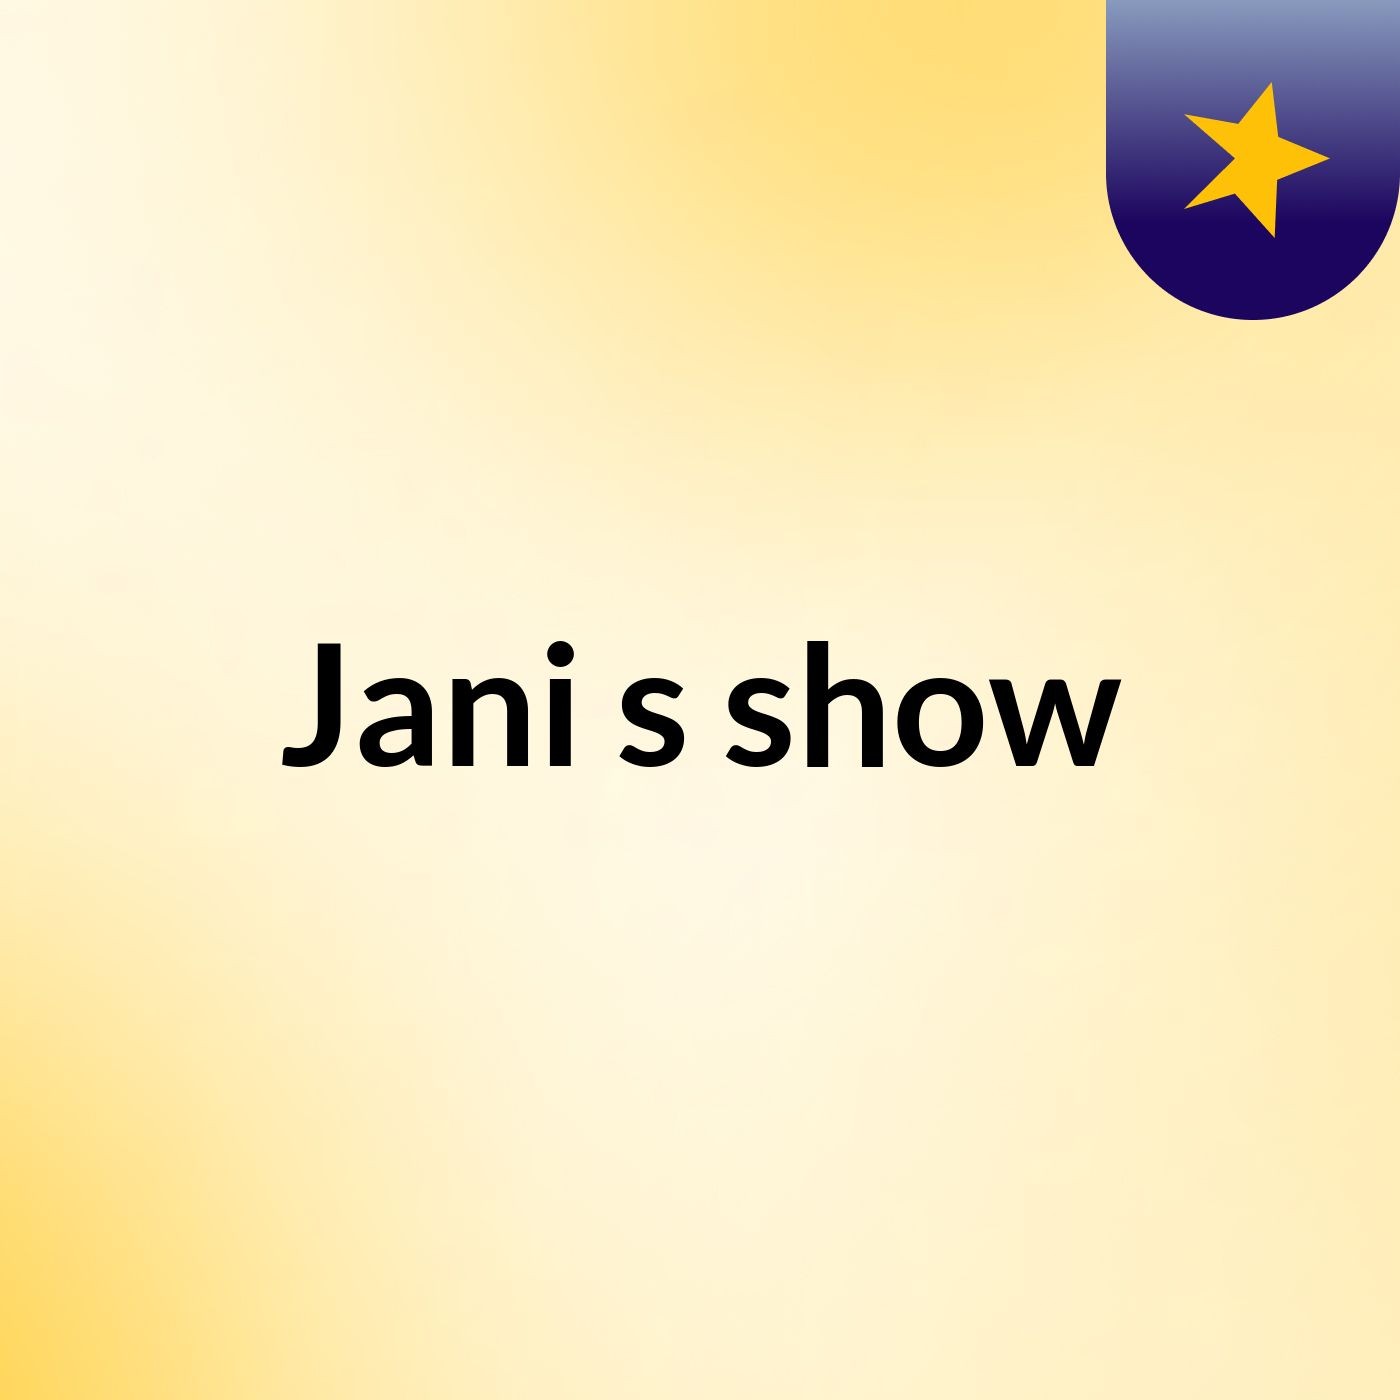 Jani's show